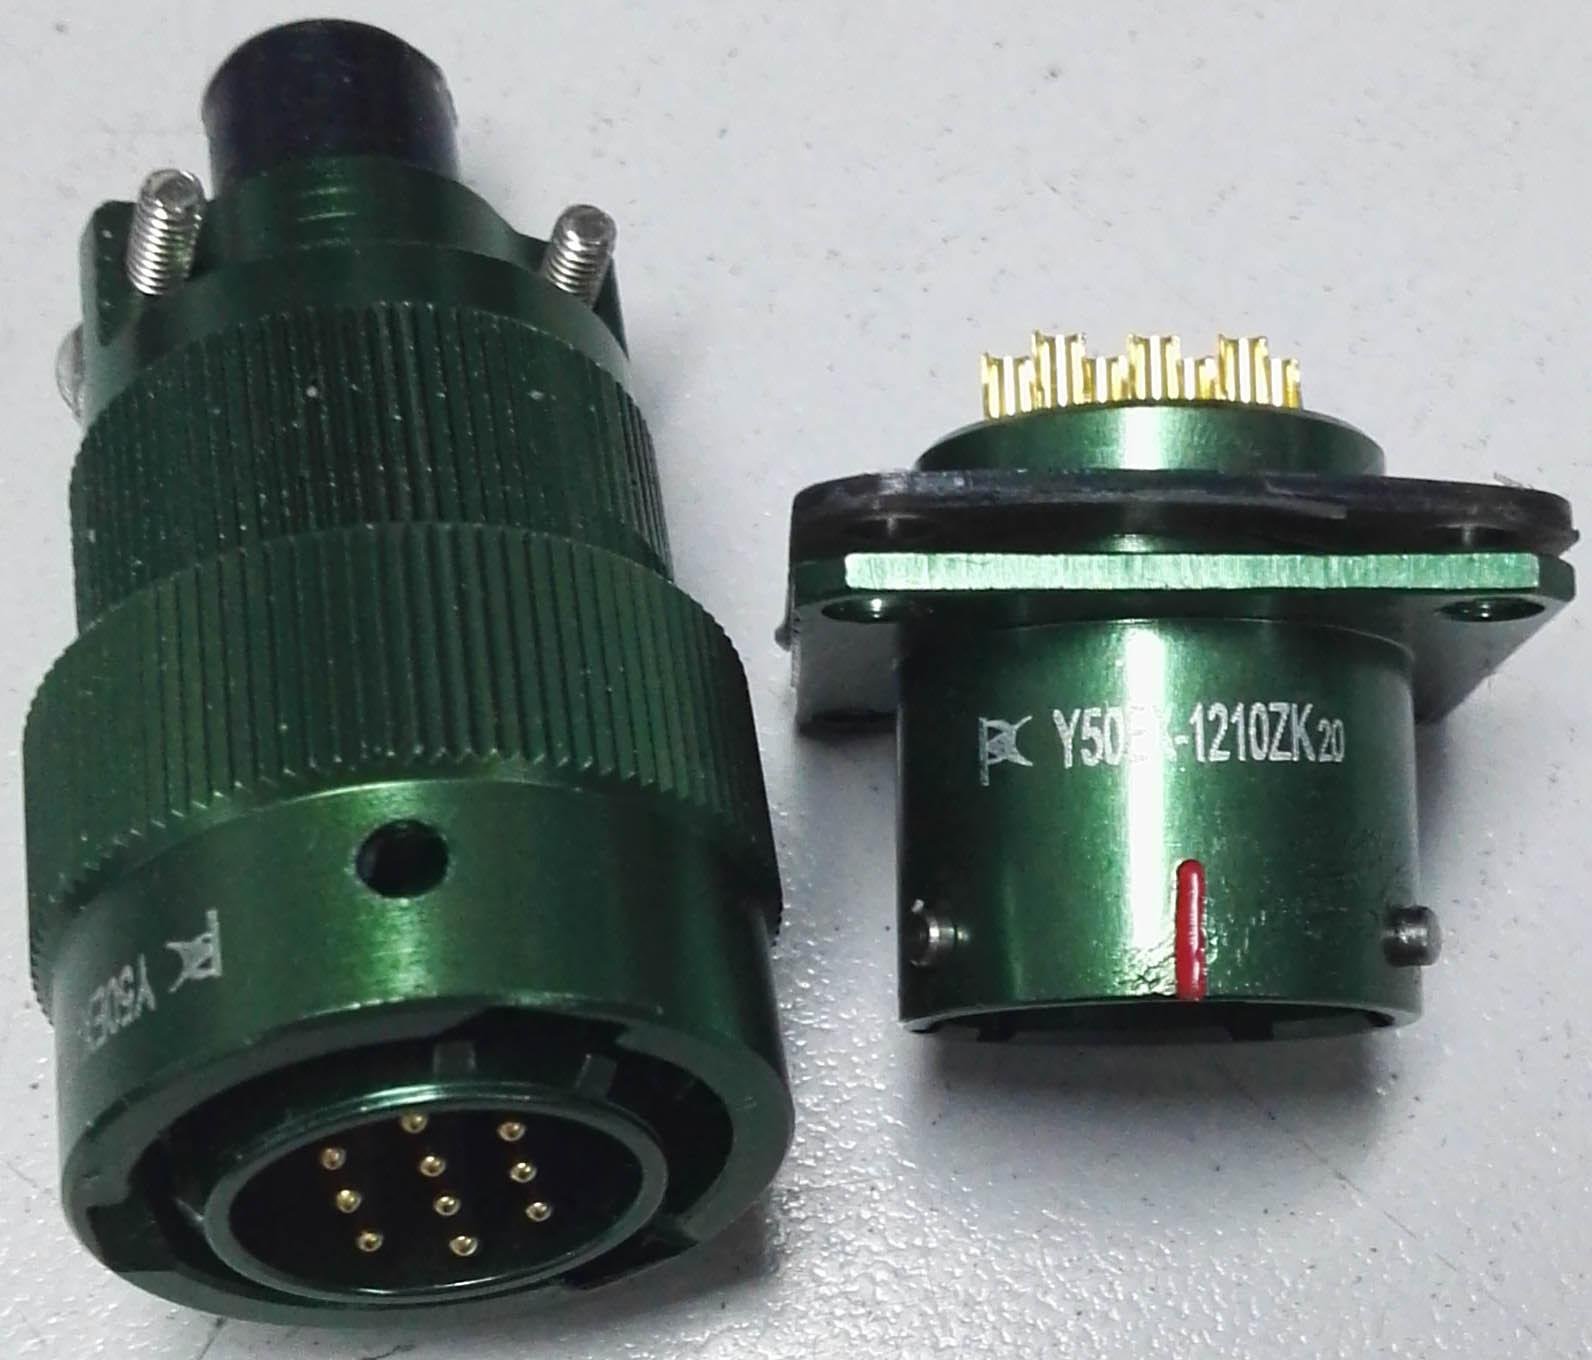 Circular connectors as MIL-C-26482 series